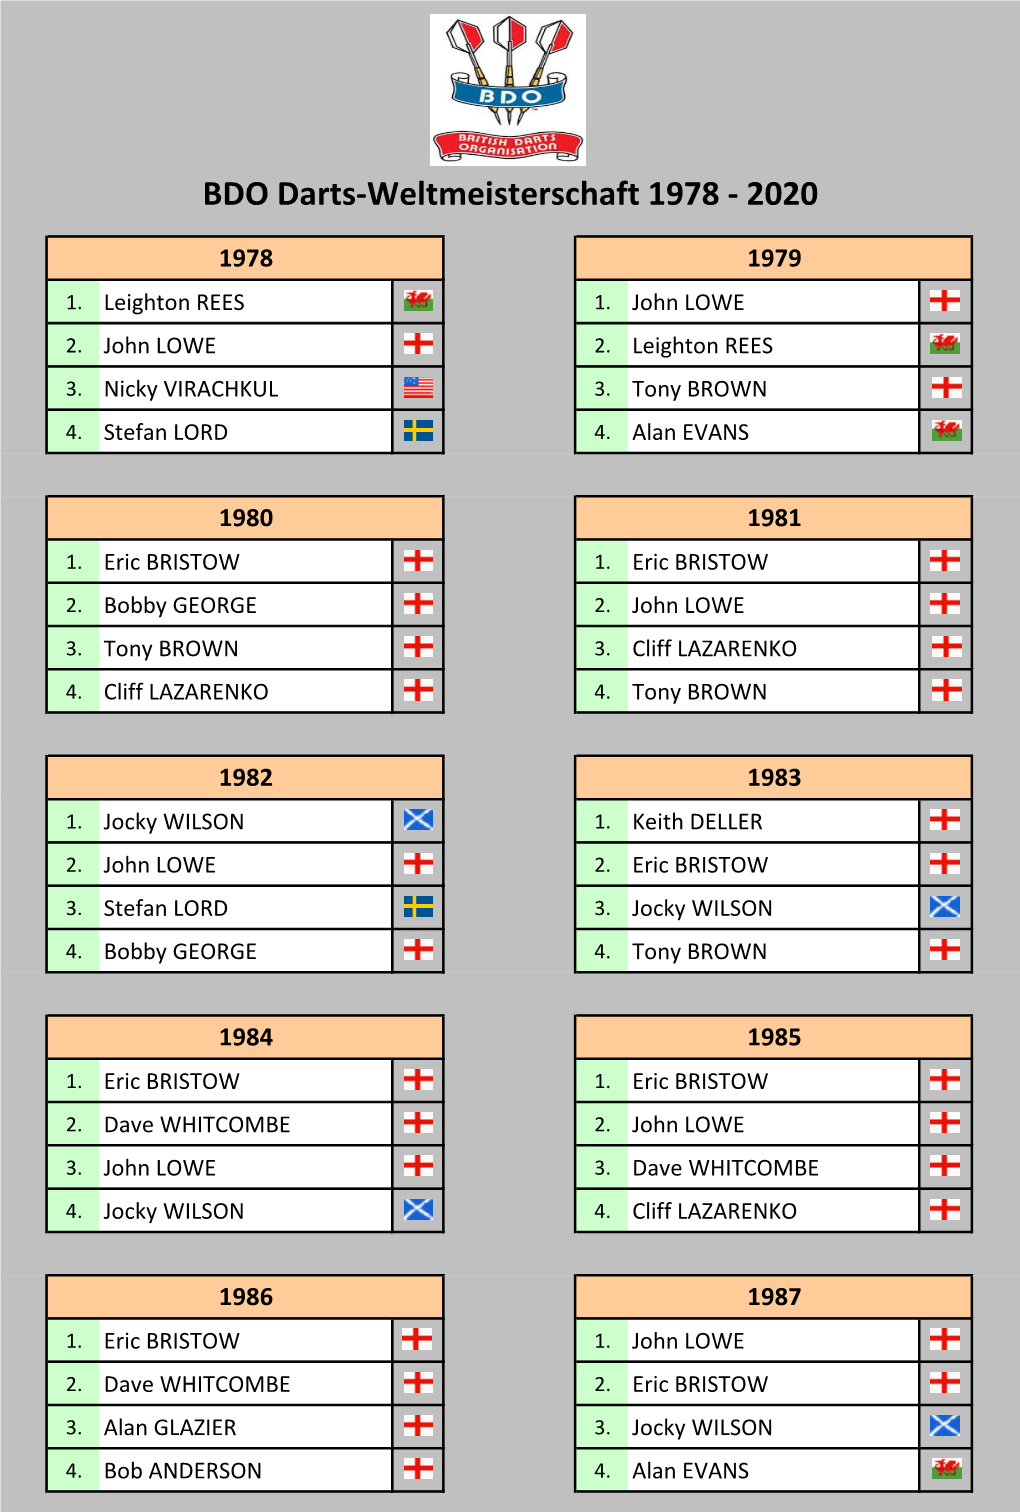 BDO Darts-Weltmeisterschaft 1978 - 2020